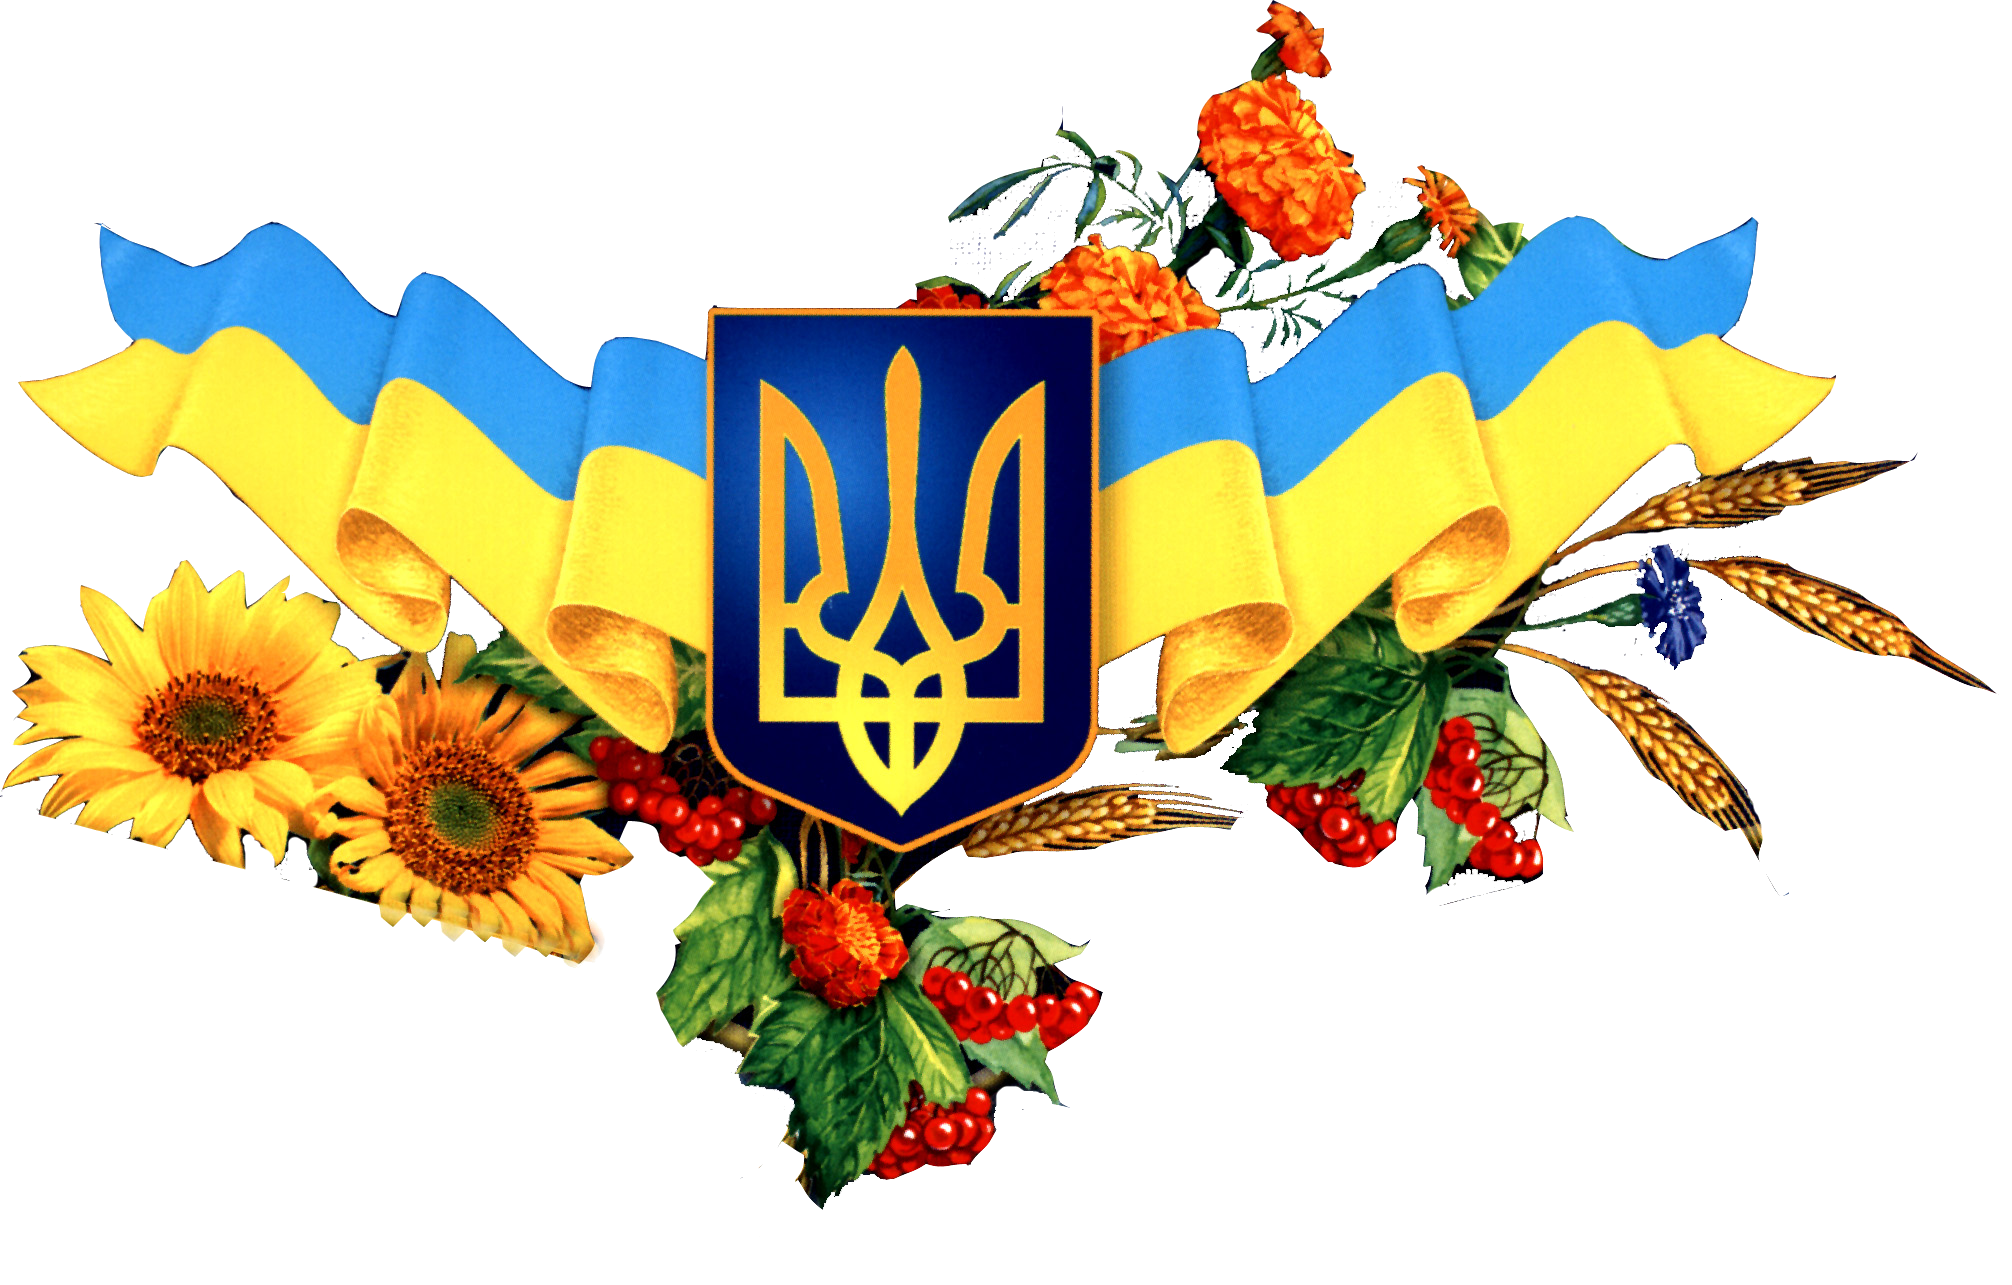 Мов україна